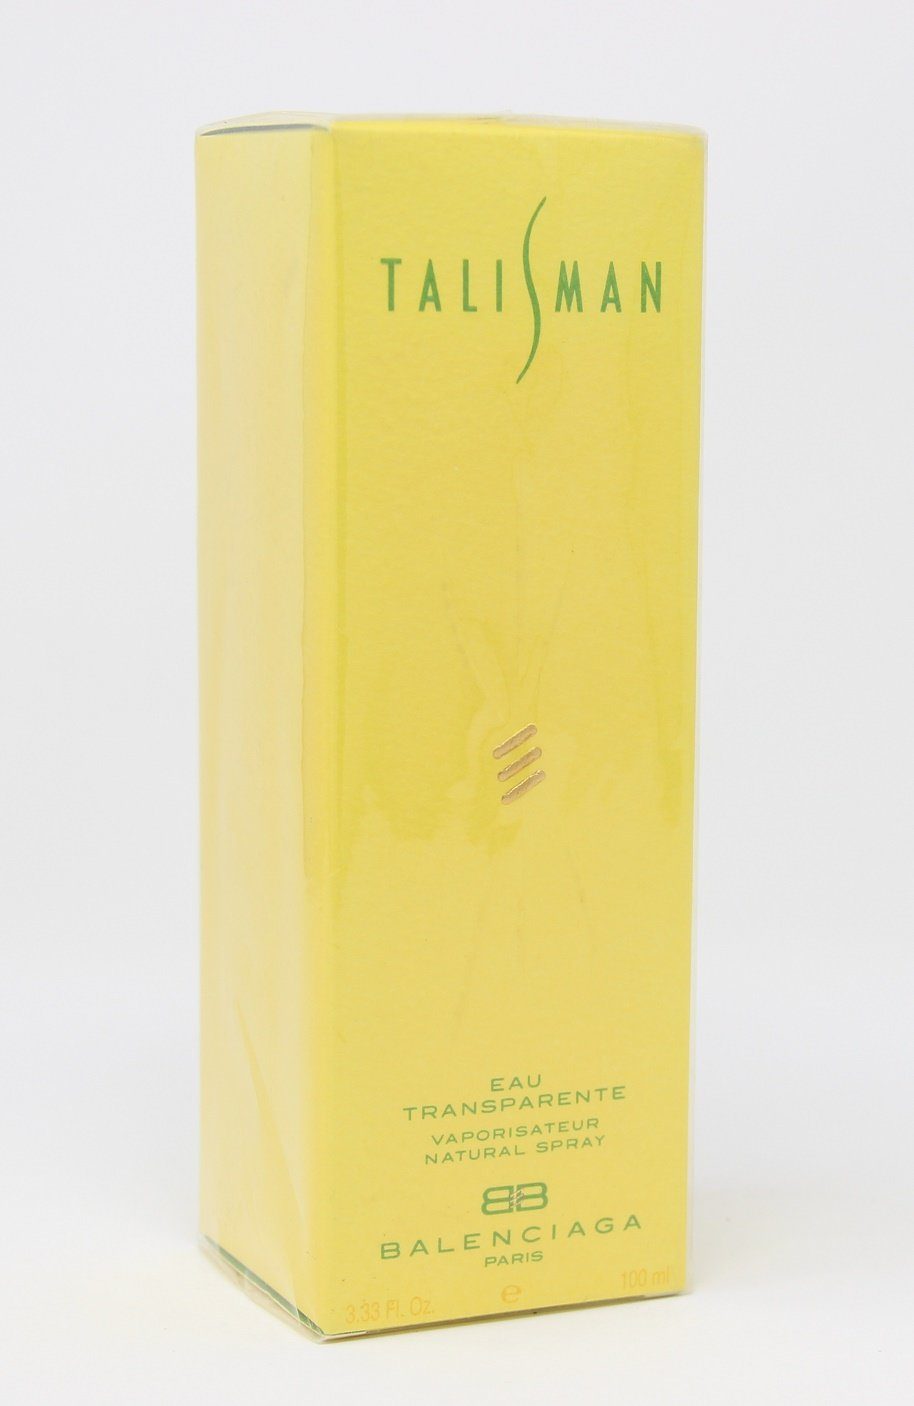 Balenciaga Eau de Parfum Balenciaga Talisman Eau Transparente Natural Spray 100ml | Eau de Parfum